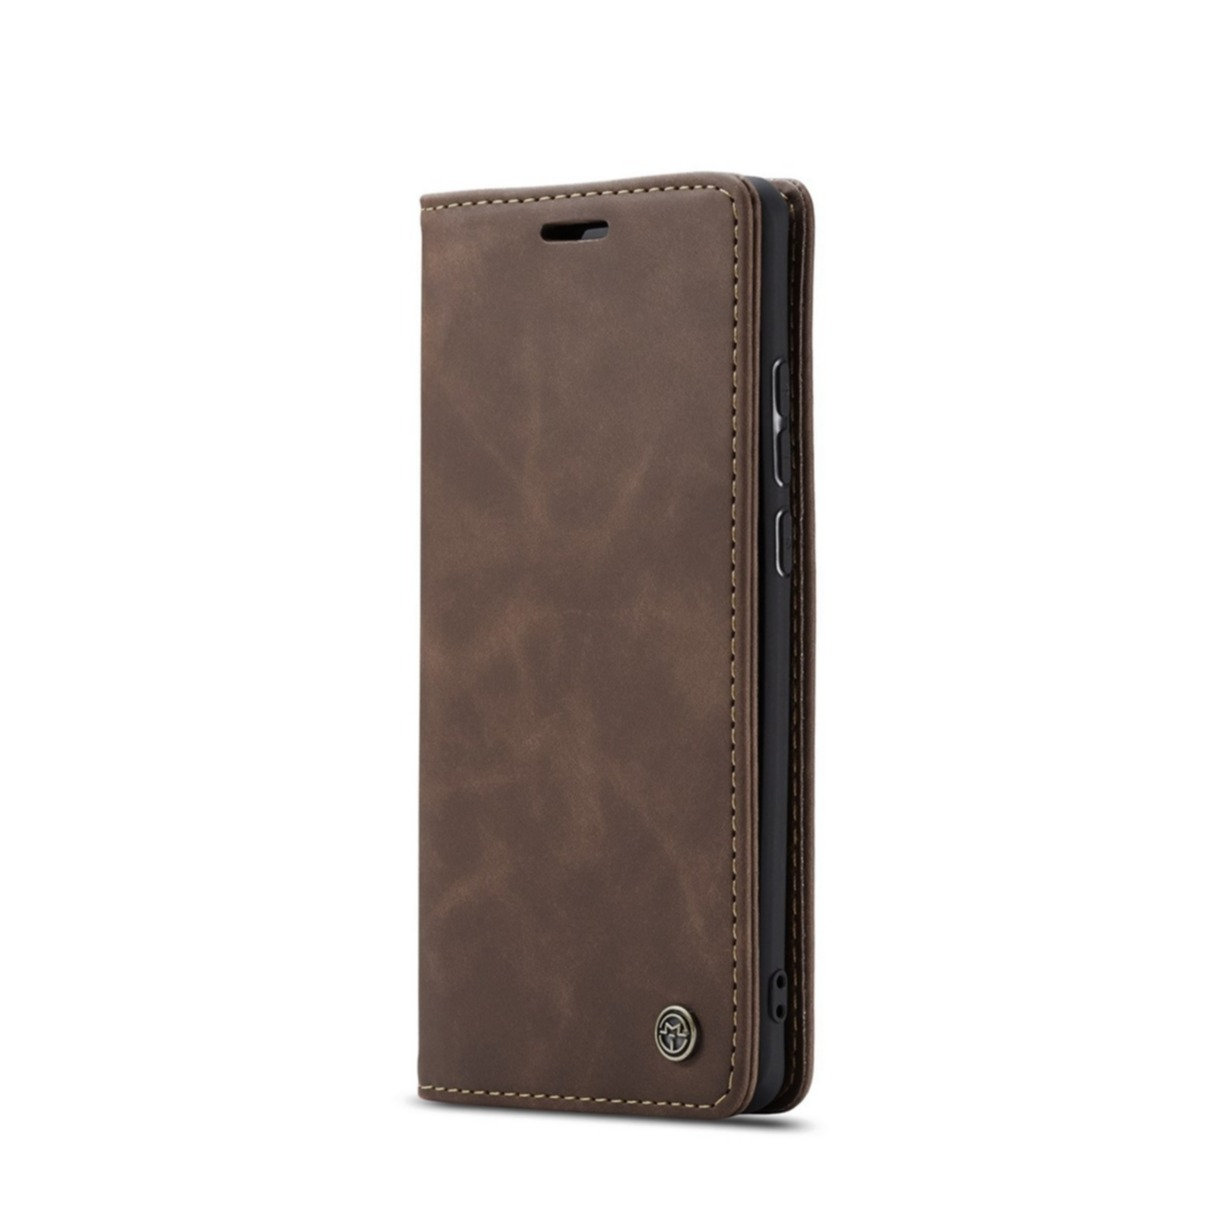 Image of Caseme - Huawei P30 Leder Tasche Flip Wallet Etui mit Kartenfächern - Dunkelbraun bei Apfelkiste.ch